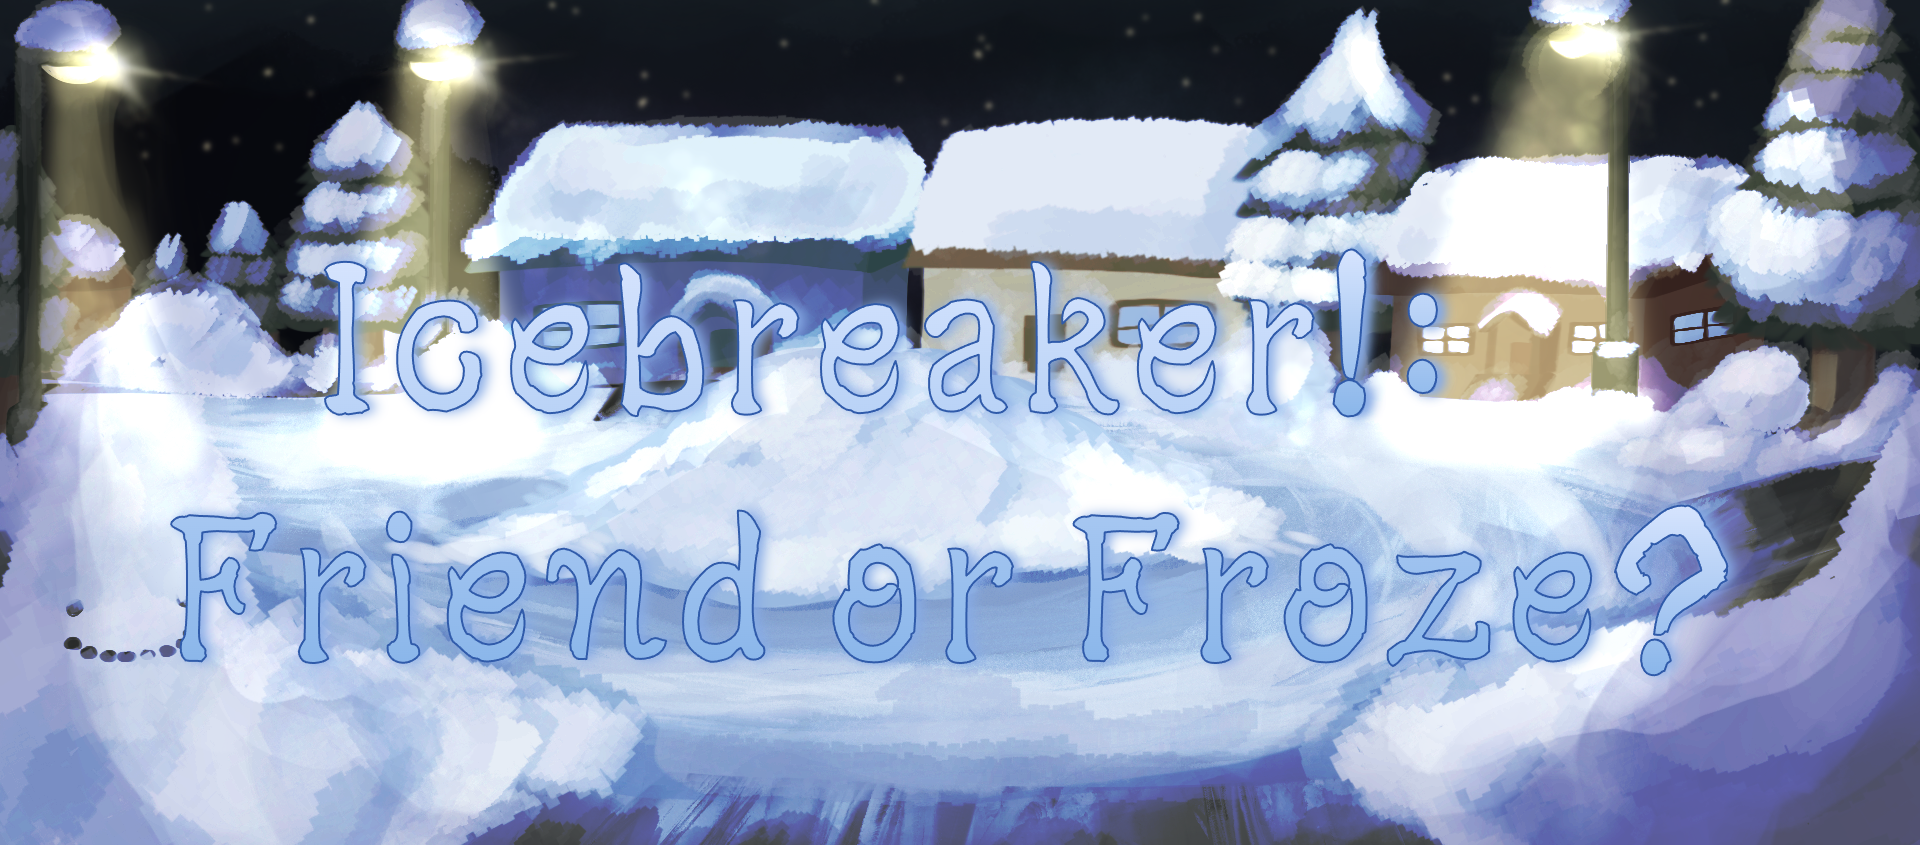 Icebreaker!: Friend or Froze?